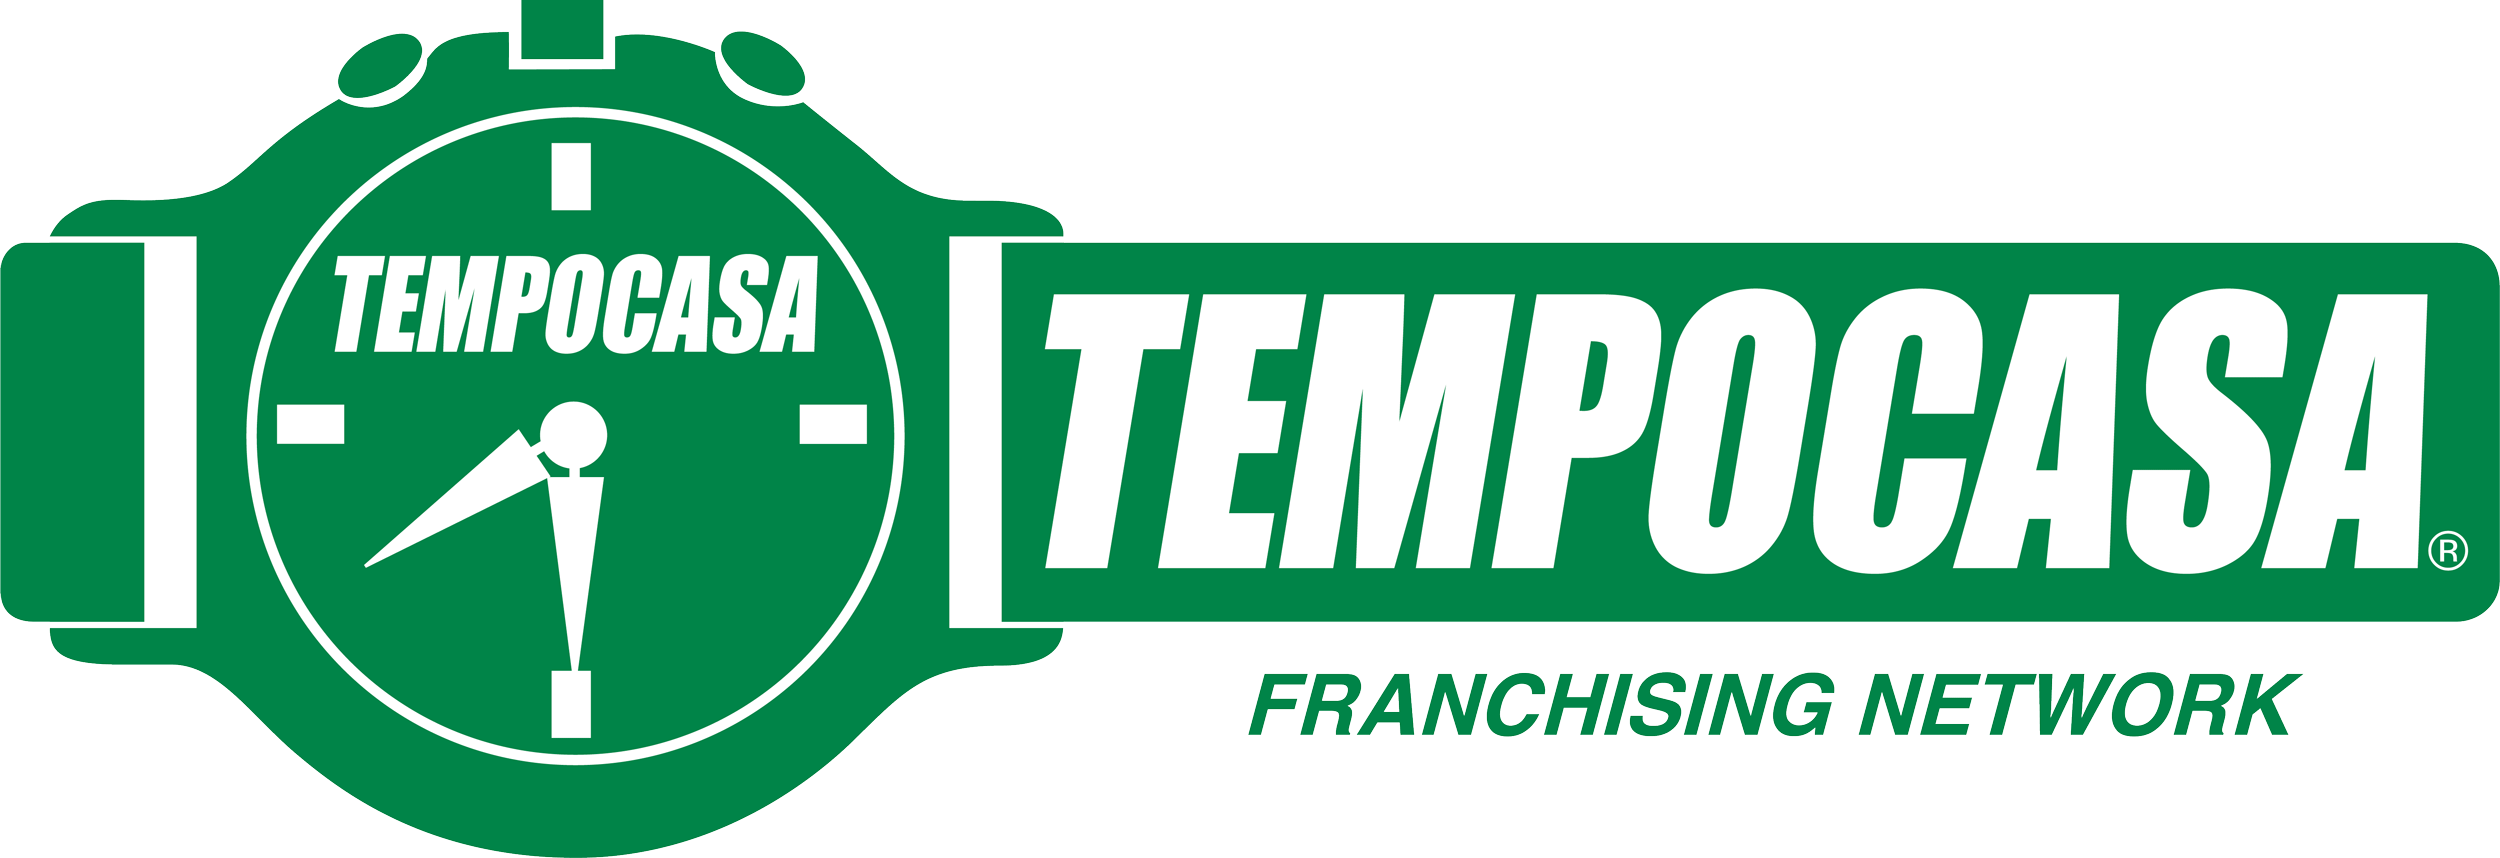 Formello - Cesano - Tempocasa